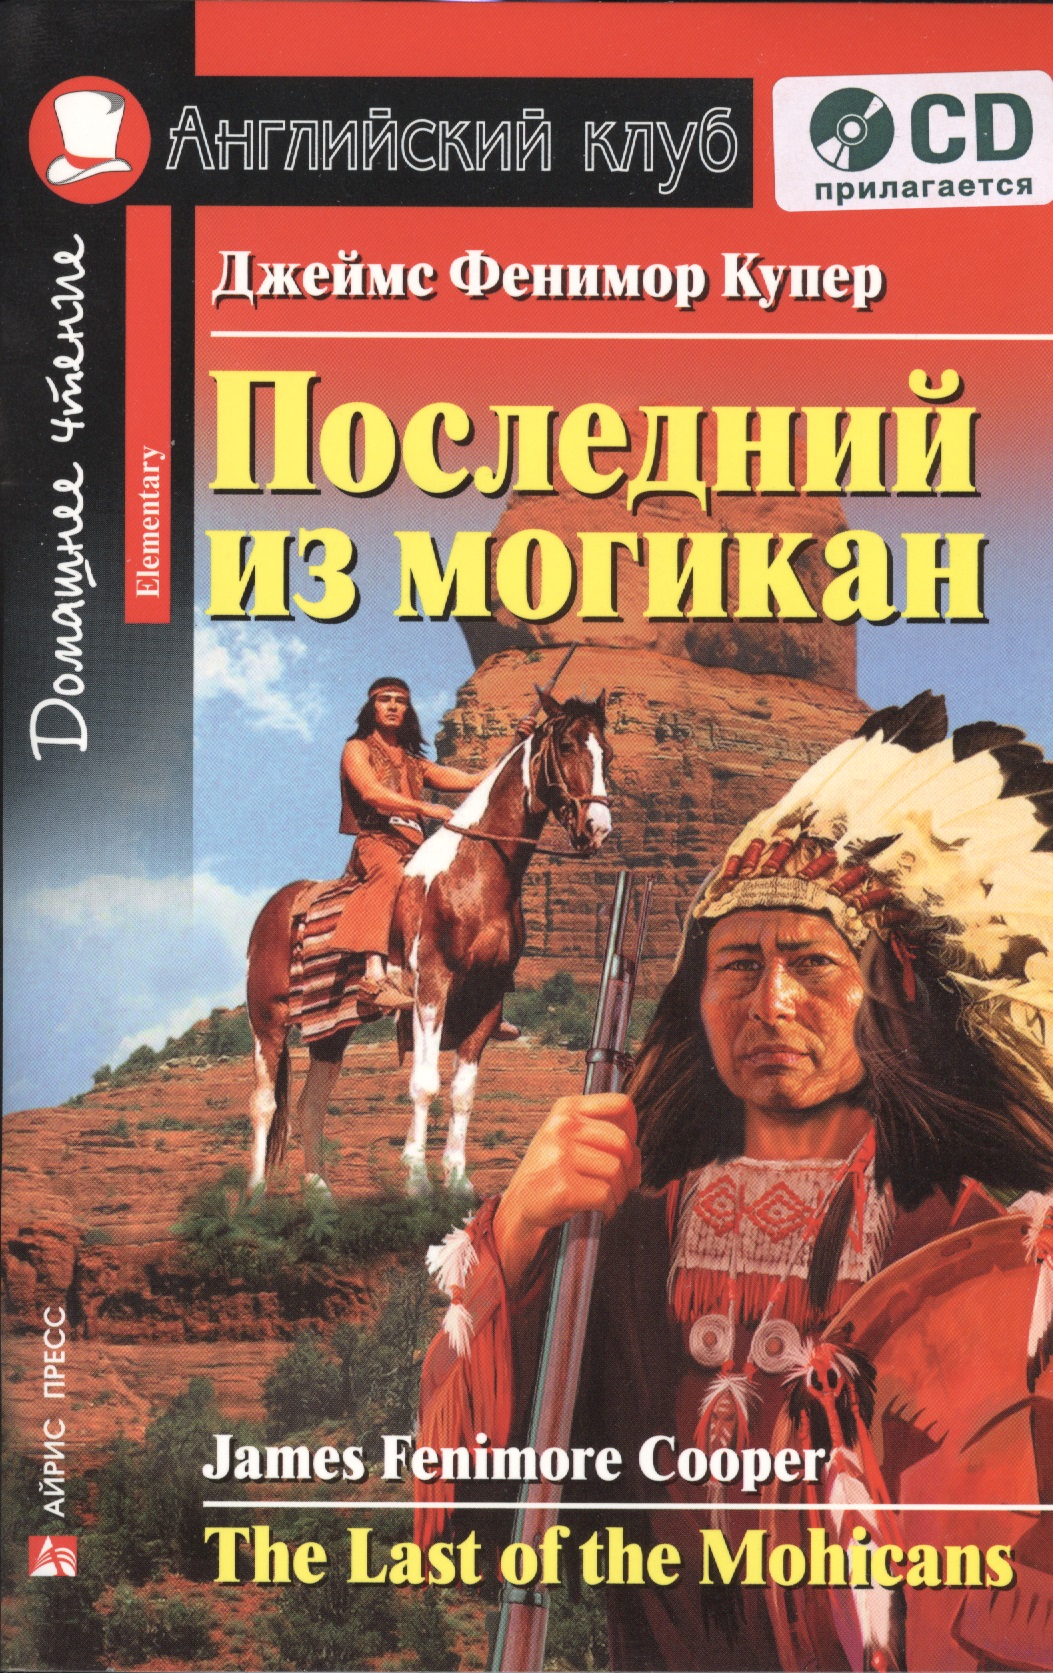 Последний из могикан [The Last of the Mohicans] (комплект с CD) cooper j the last of the mohicans последний из могикан т 2 на англ яз